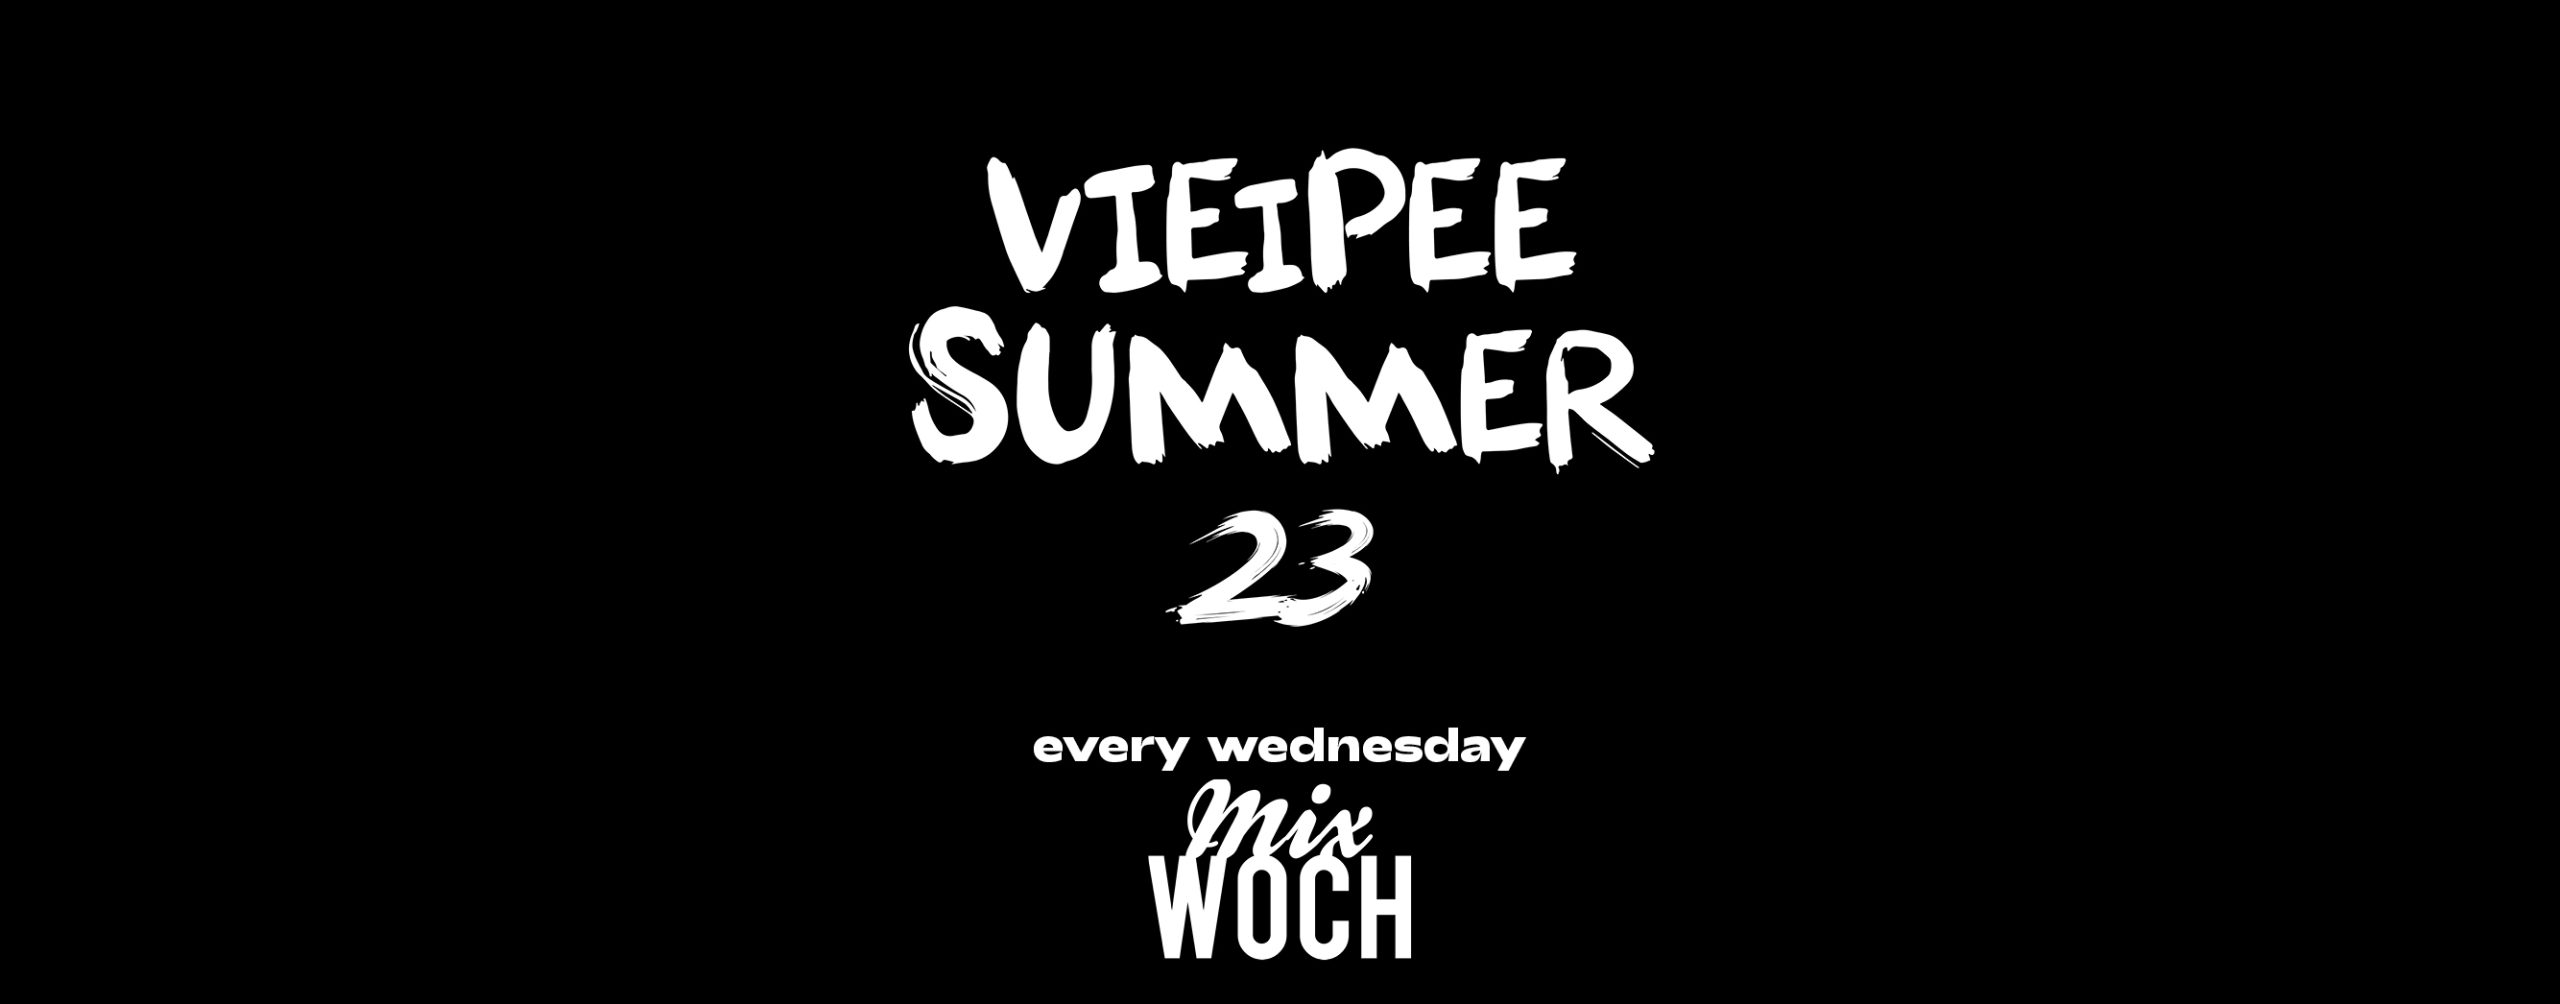 MIXWOCH-Any Given Wednesday am 7. June 2023 @ VIE i PEE.